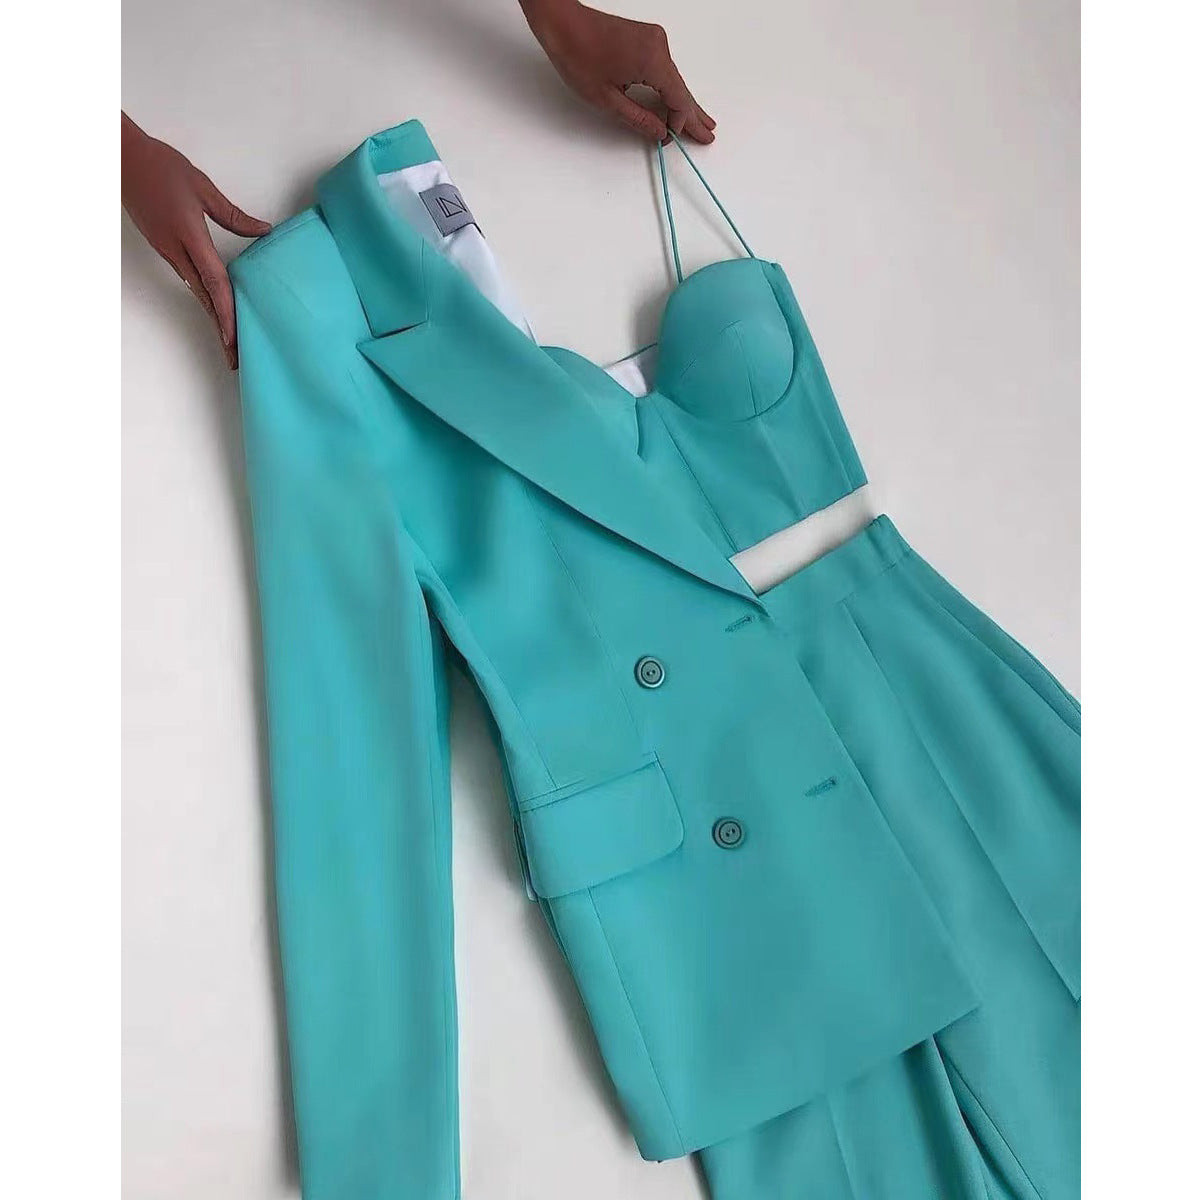 Suits: Quality Casual Office Business Bra Pants Blazer Suit Set